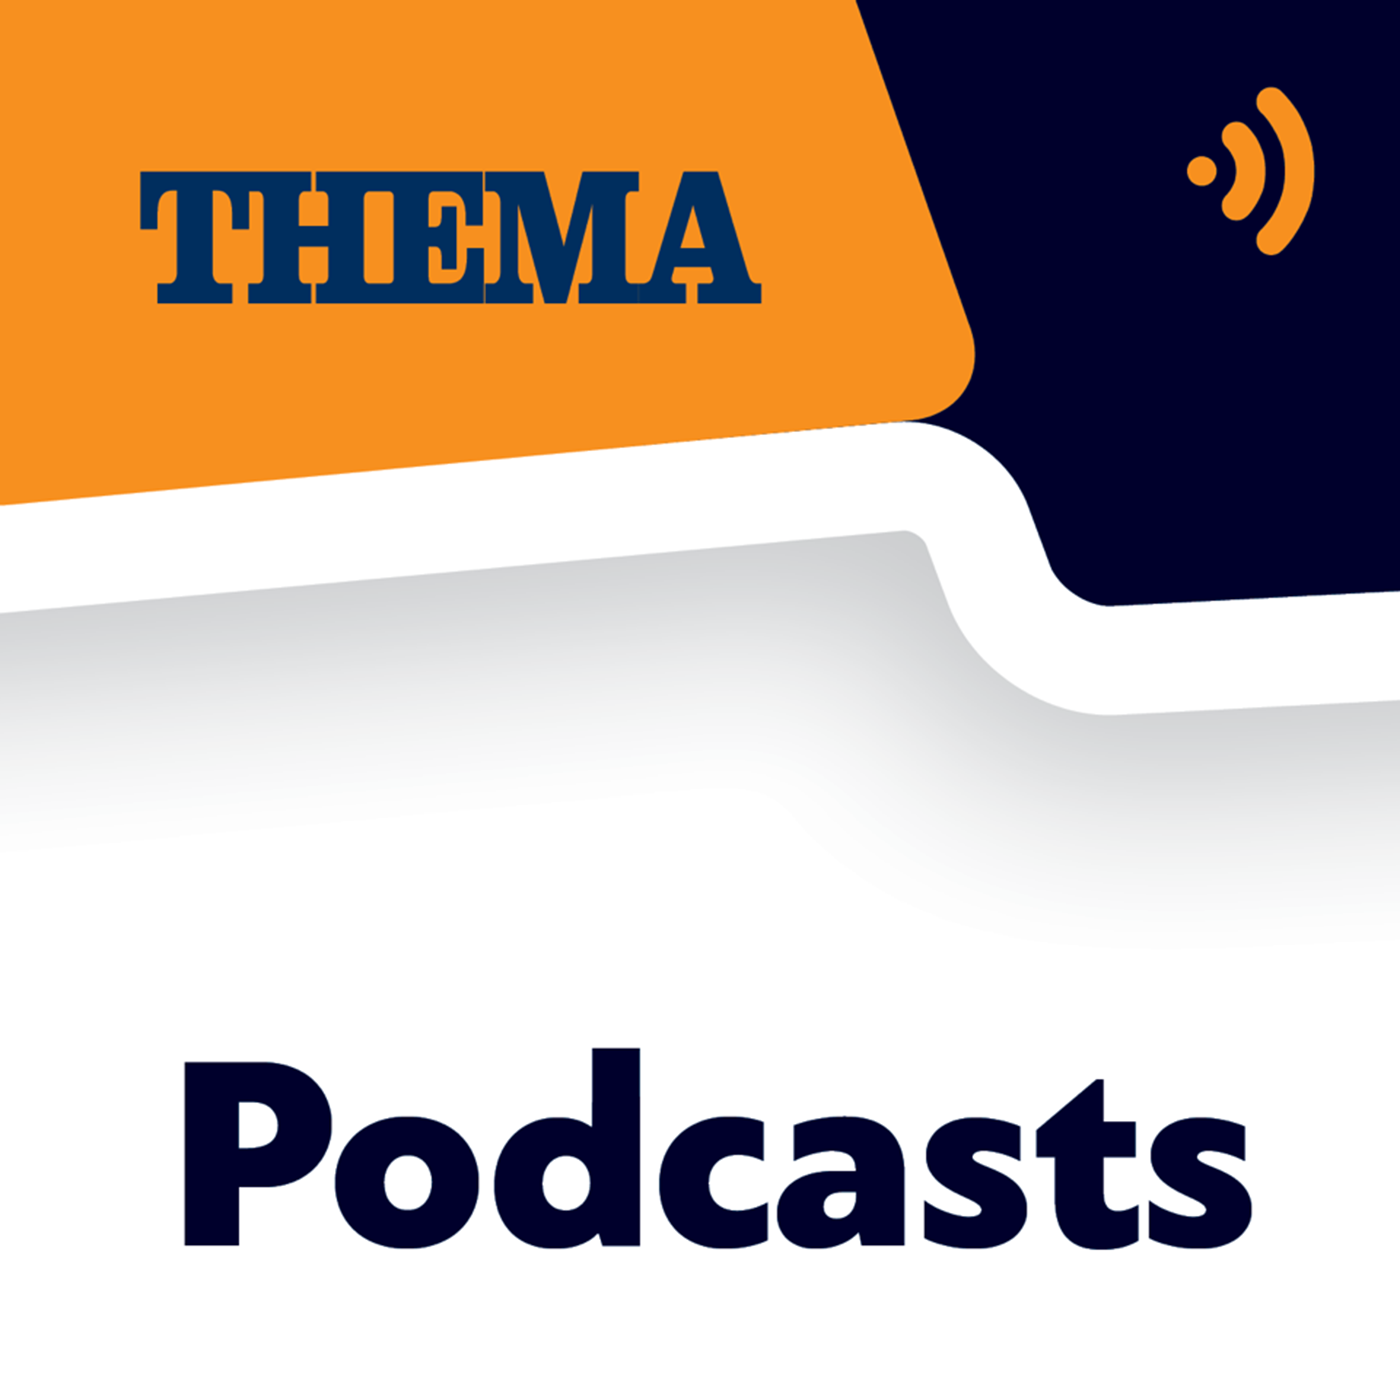 Τ. Θεοδωρικάκος στο podcast του ΘΕΜΑ 104,6: Προσλήψεις με ετήσιο γραπτό διαγωνισμό και αξιολόγηση προσωπικότητας